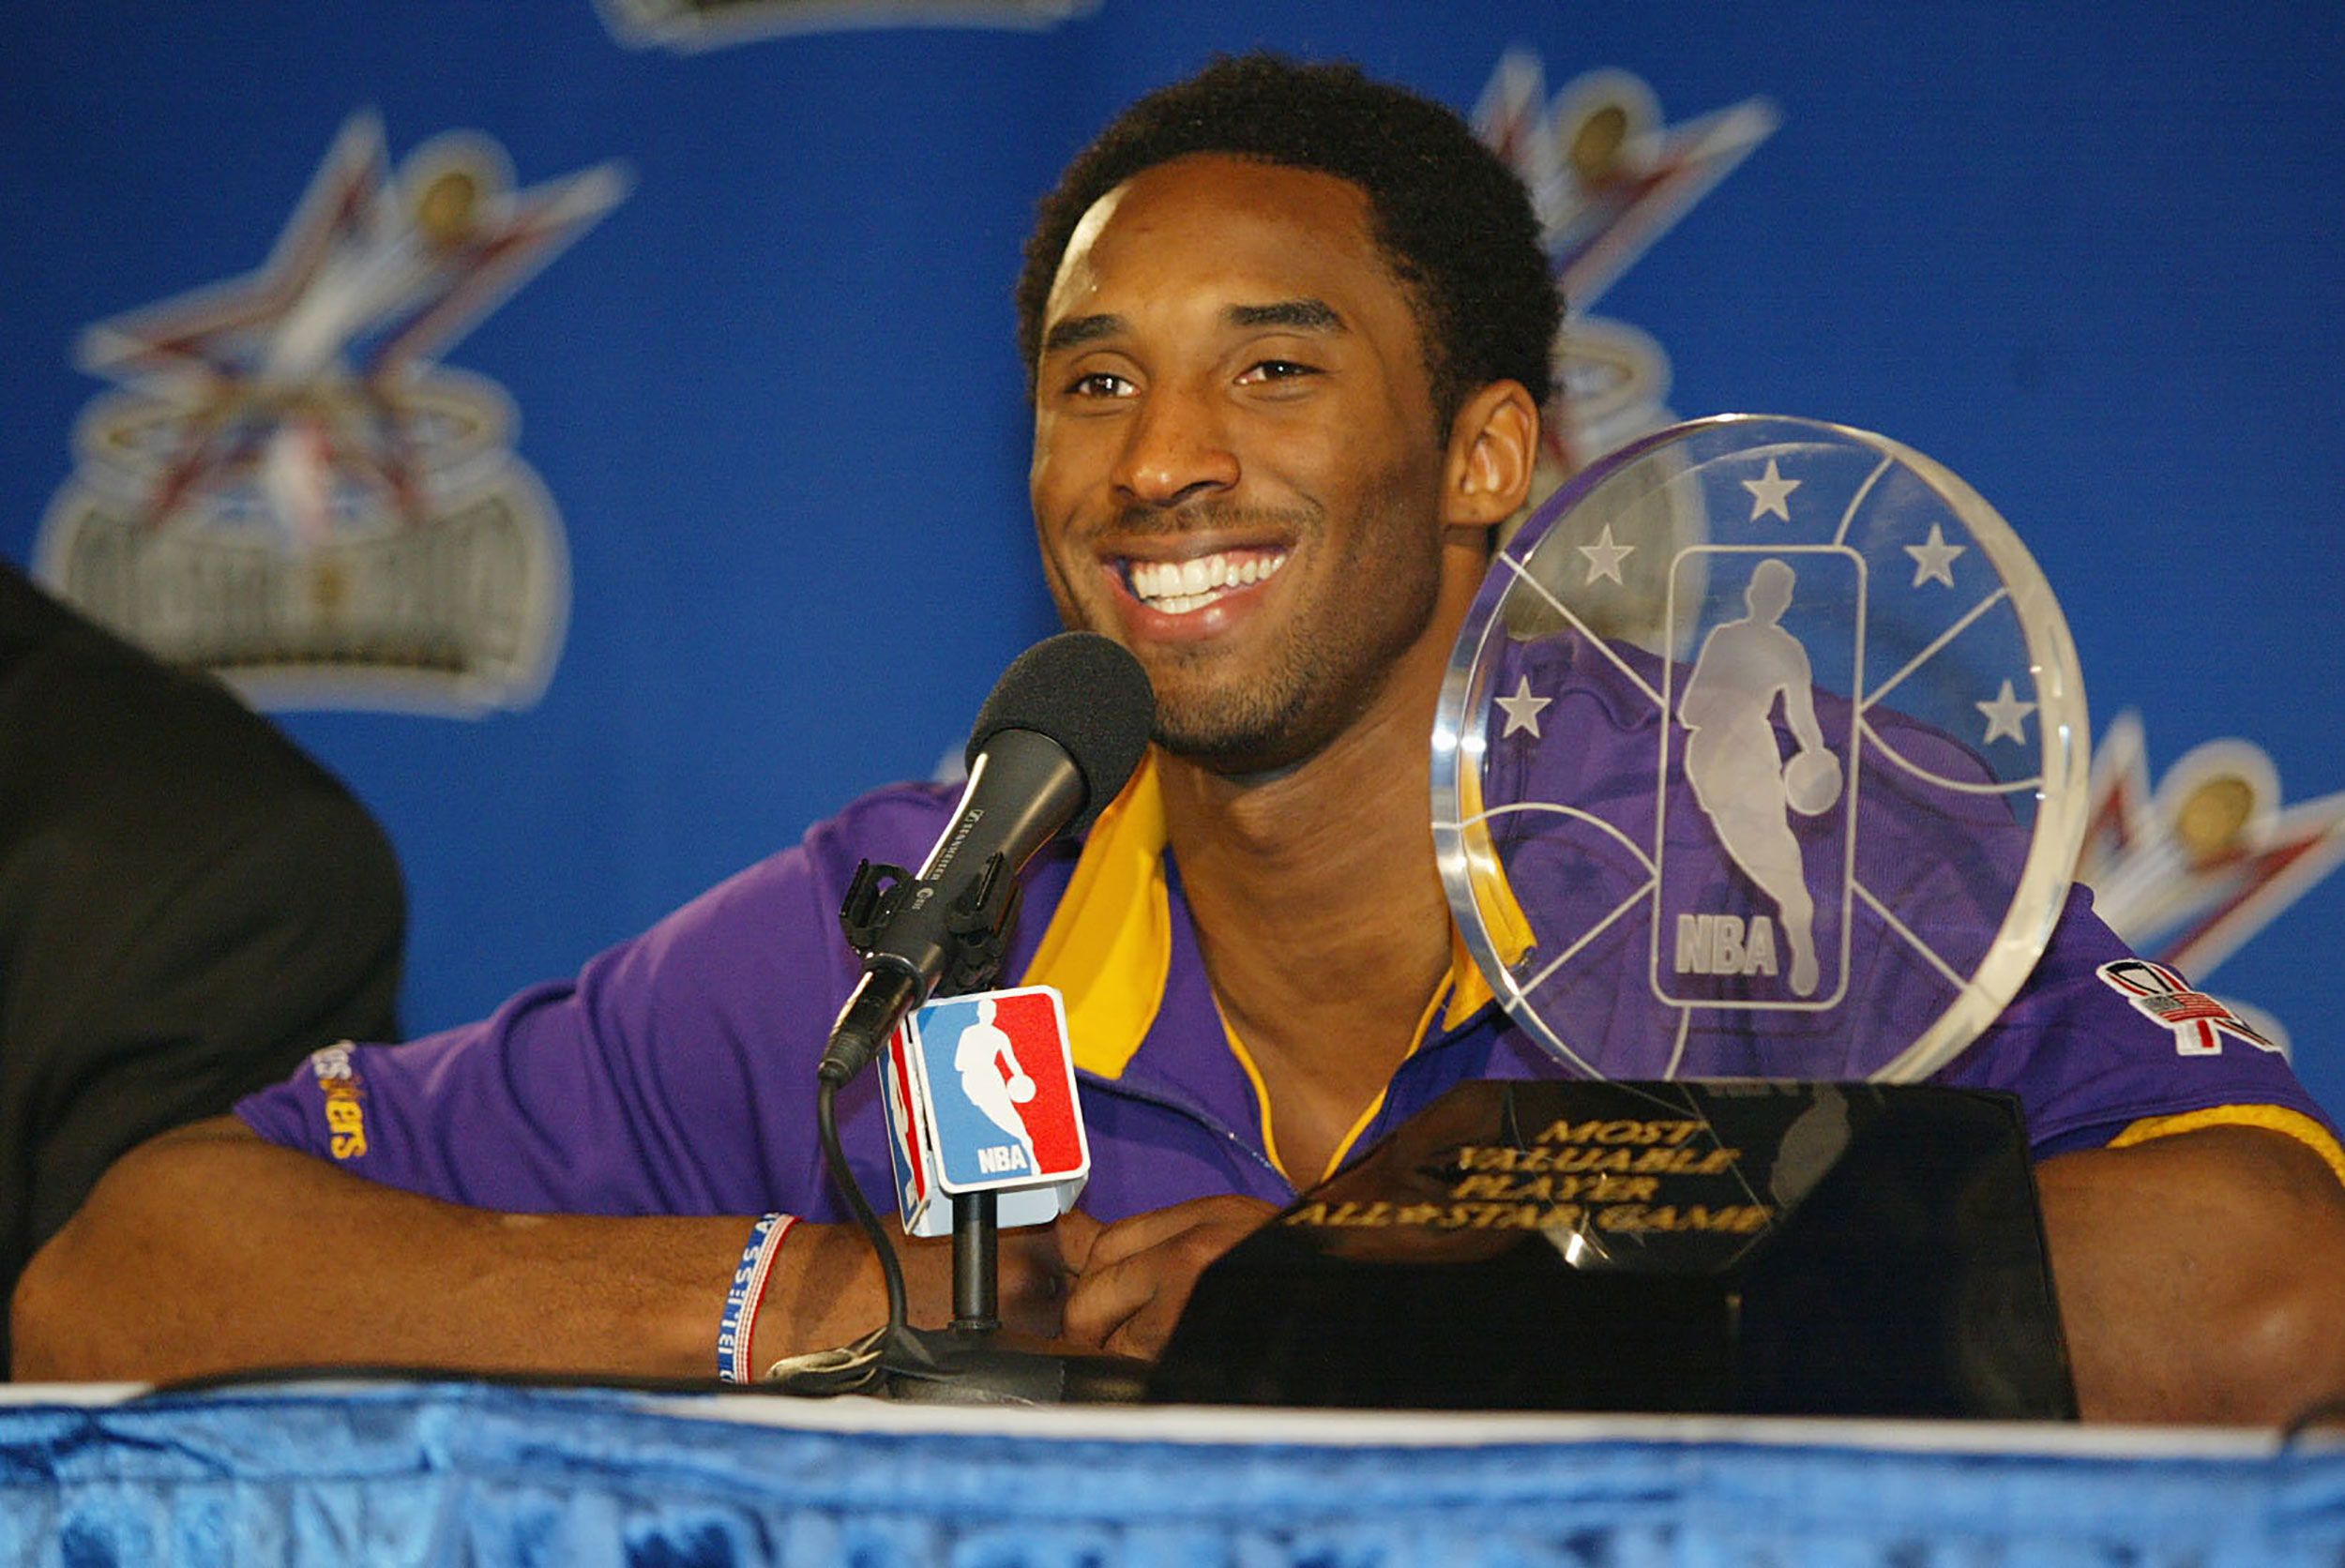 NBA All-Star Game Kobe Bryant MVP Award: Can LeBron James win fourth?